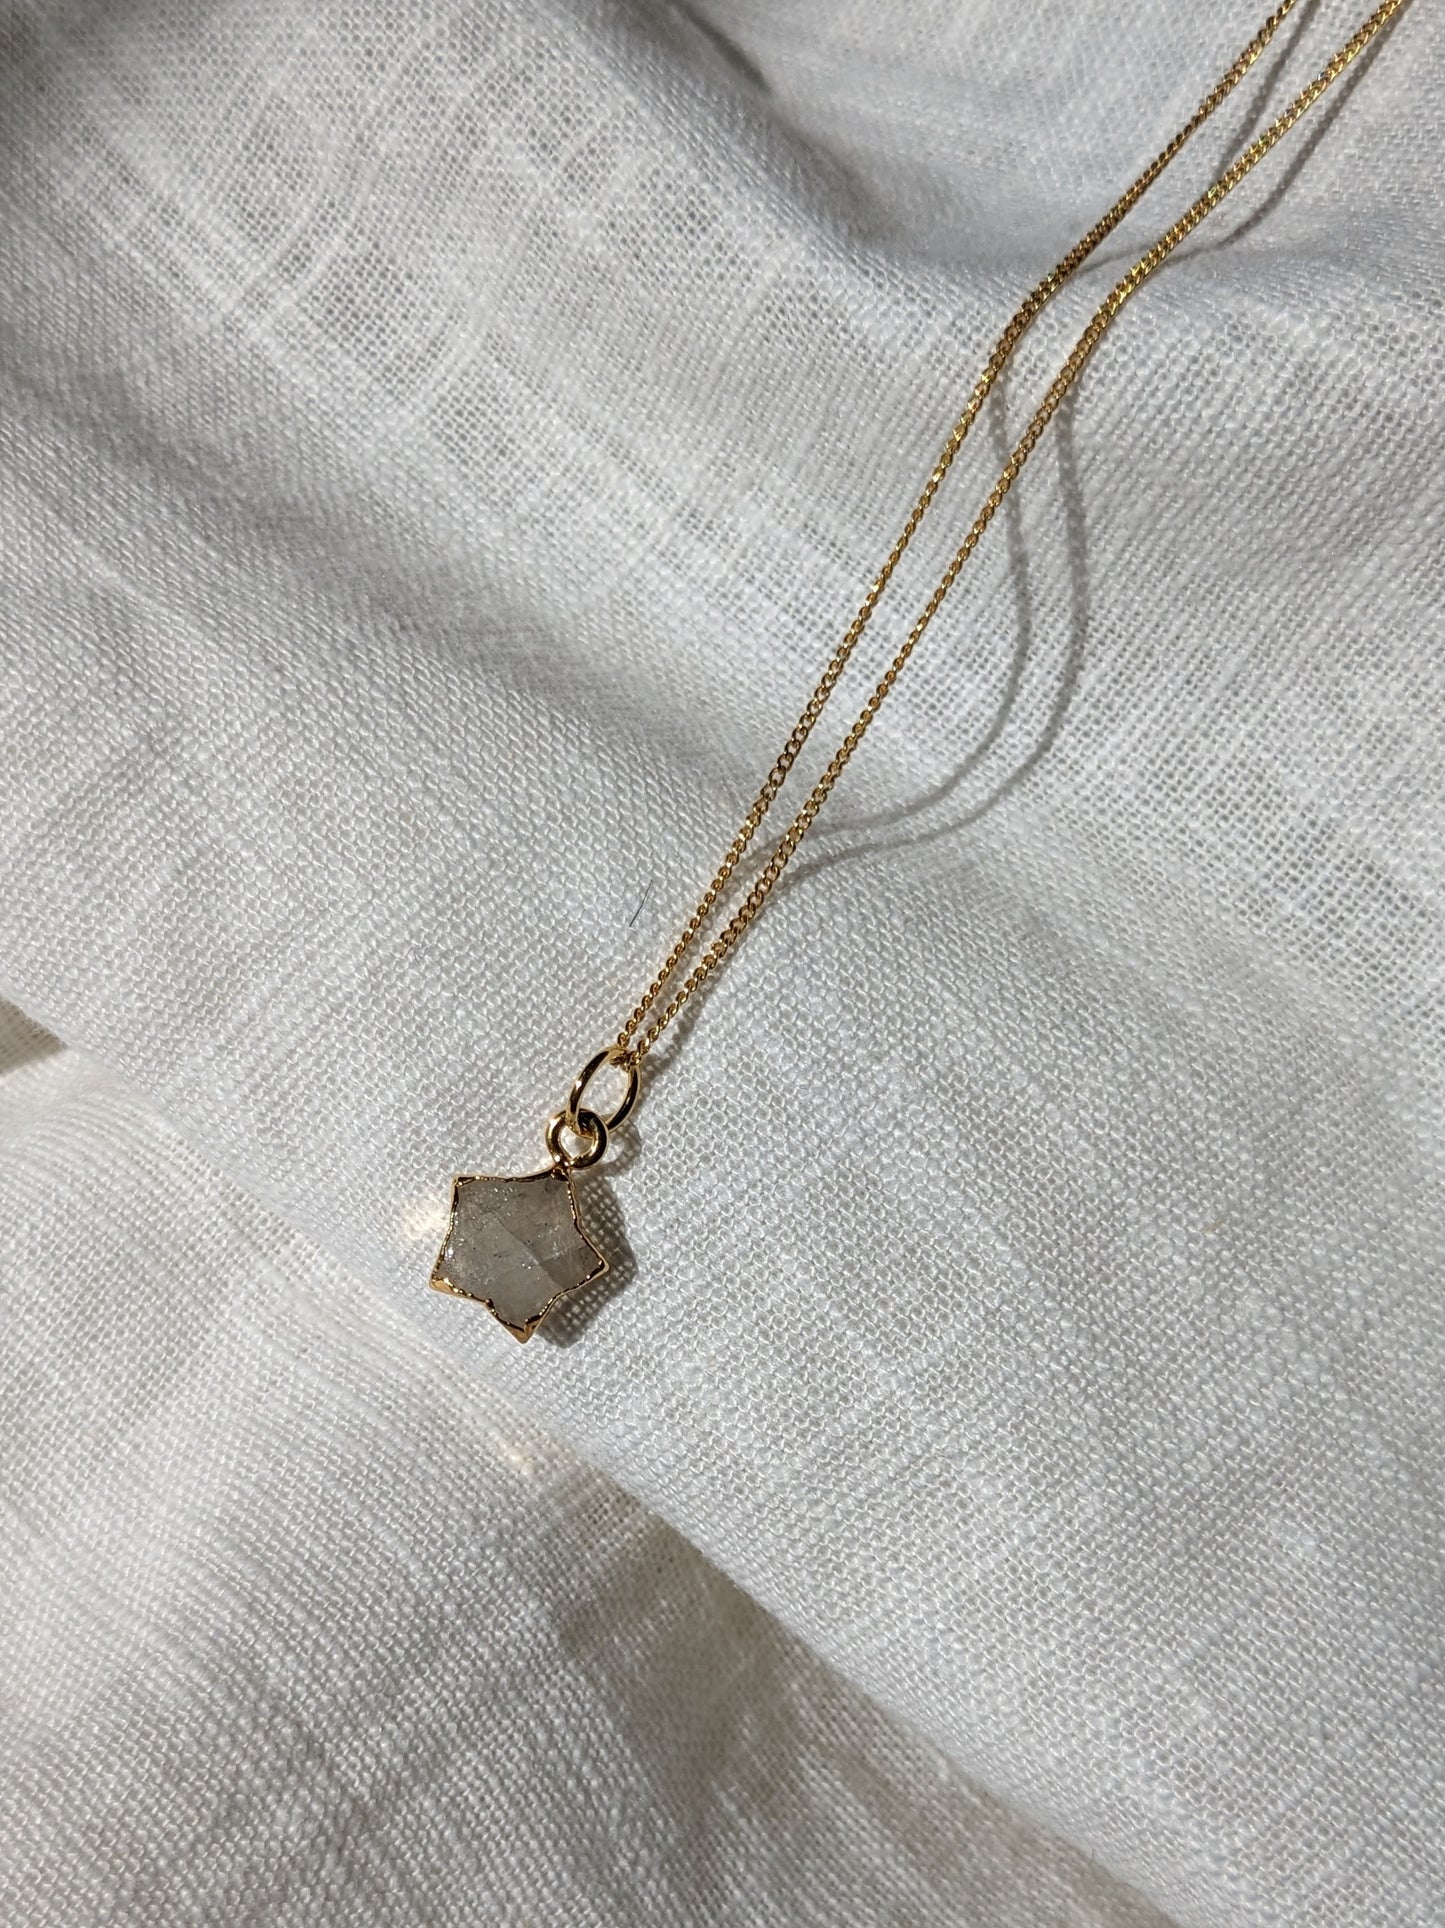 Semi precious Star Necklace - Gold